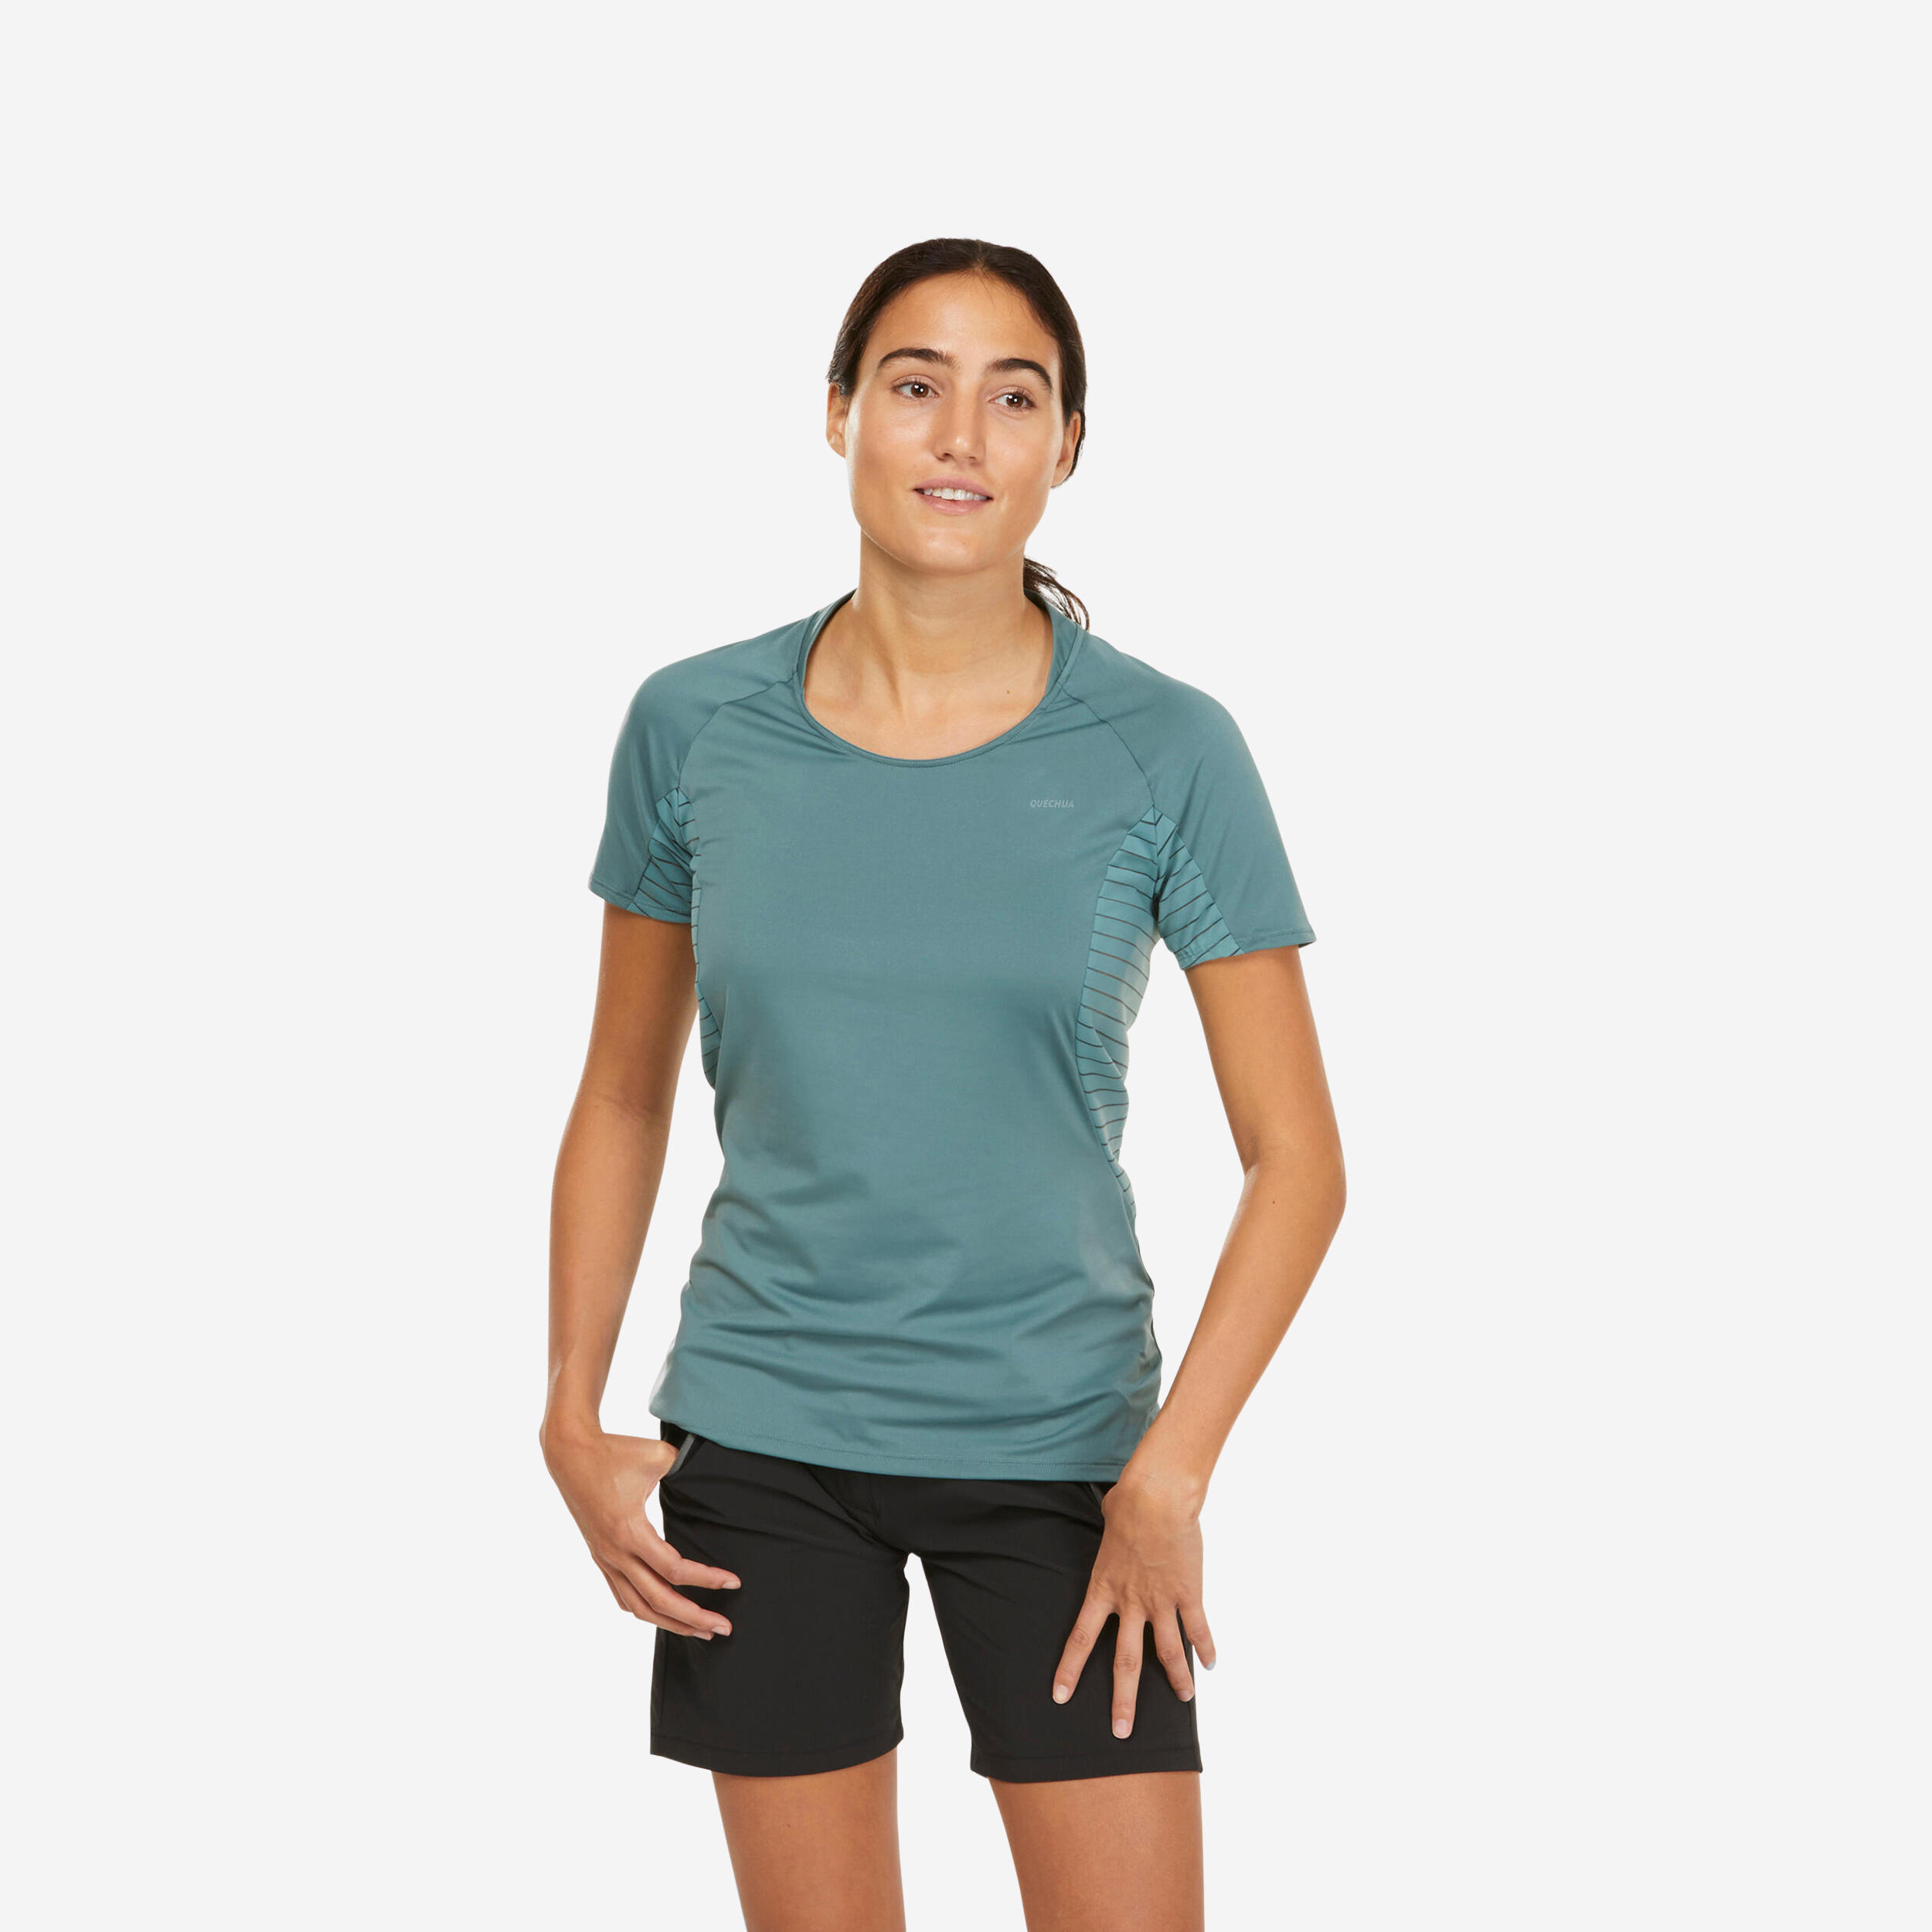 Women's Hiking T-Shirt - MH 500 - QUECHUA